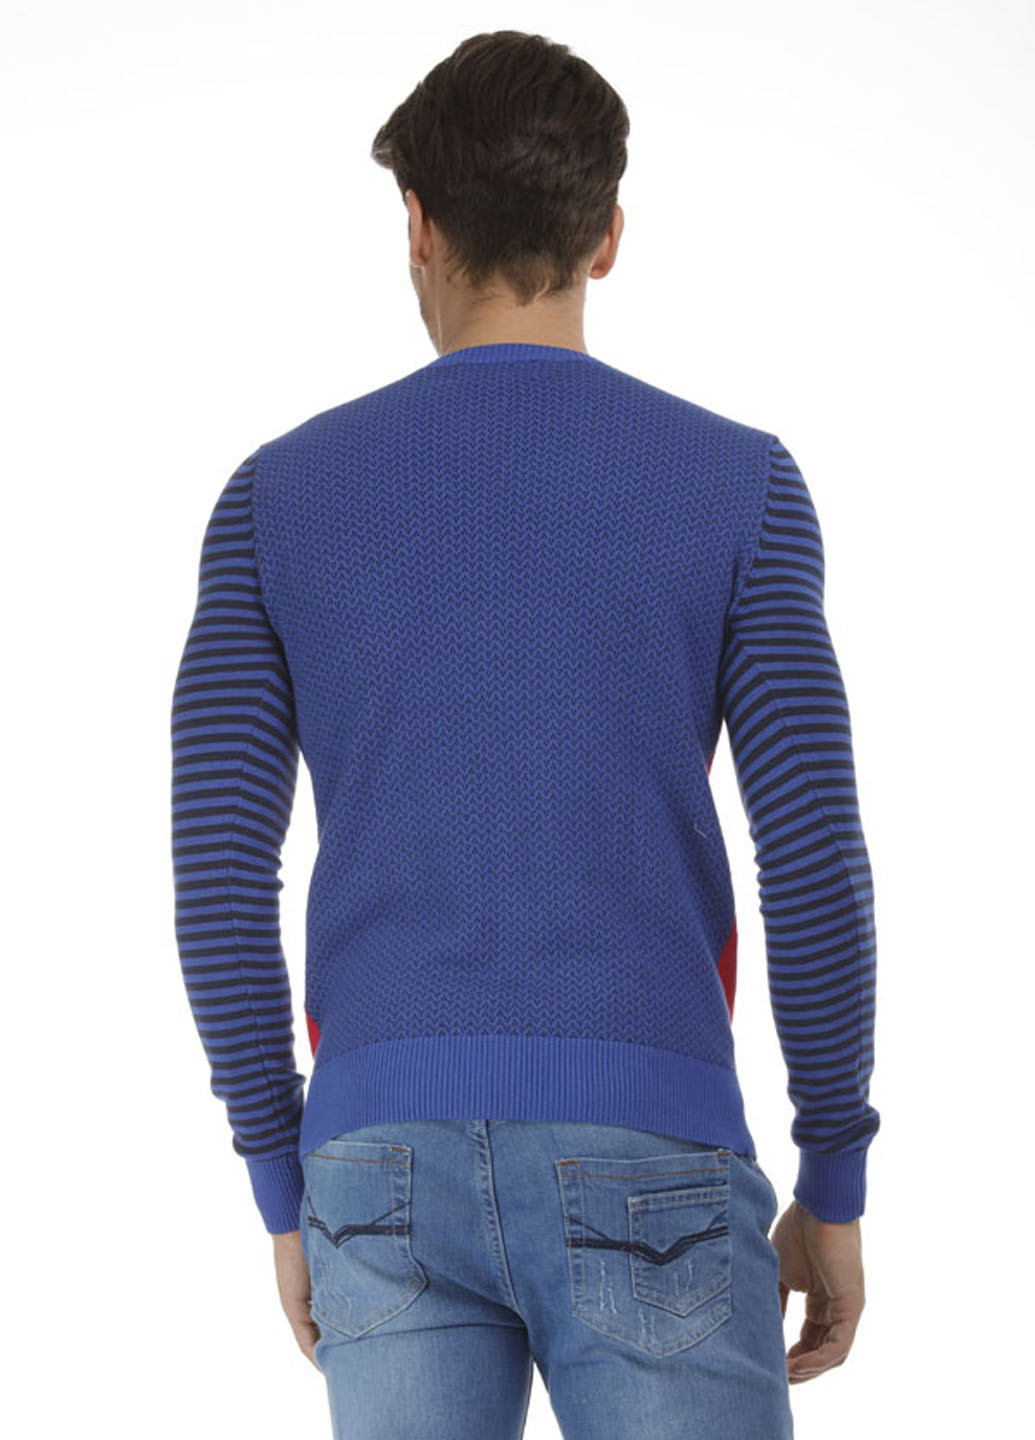 Комбинированный демисезонный пуловер пуловер Яavin